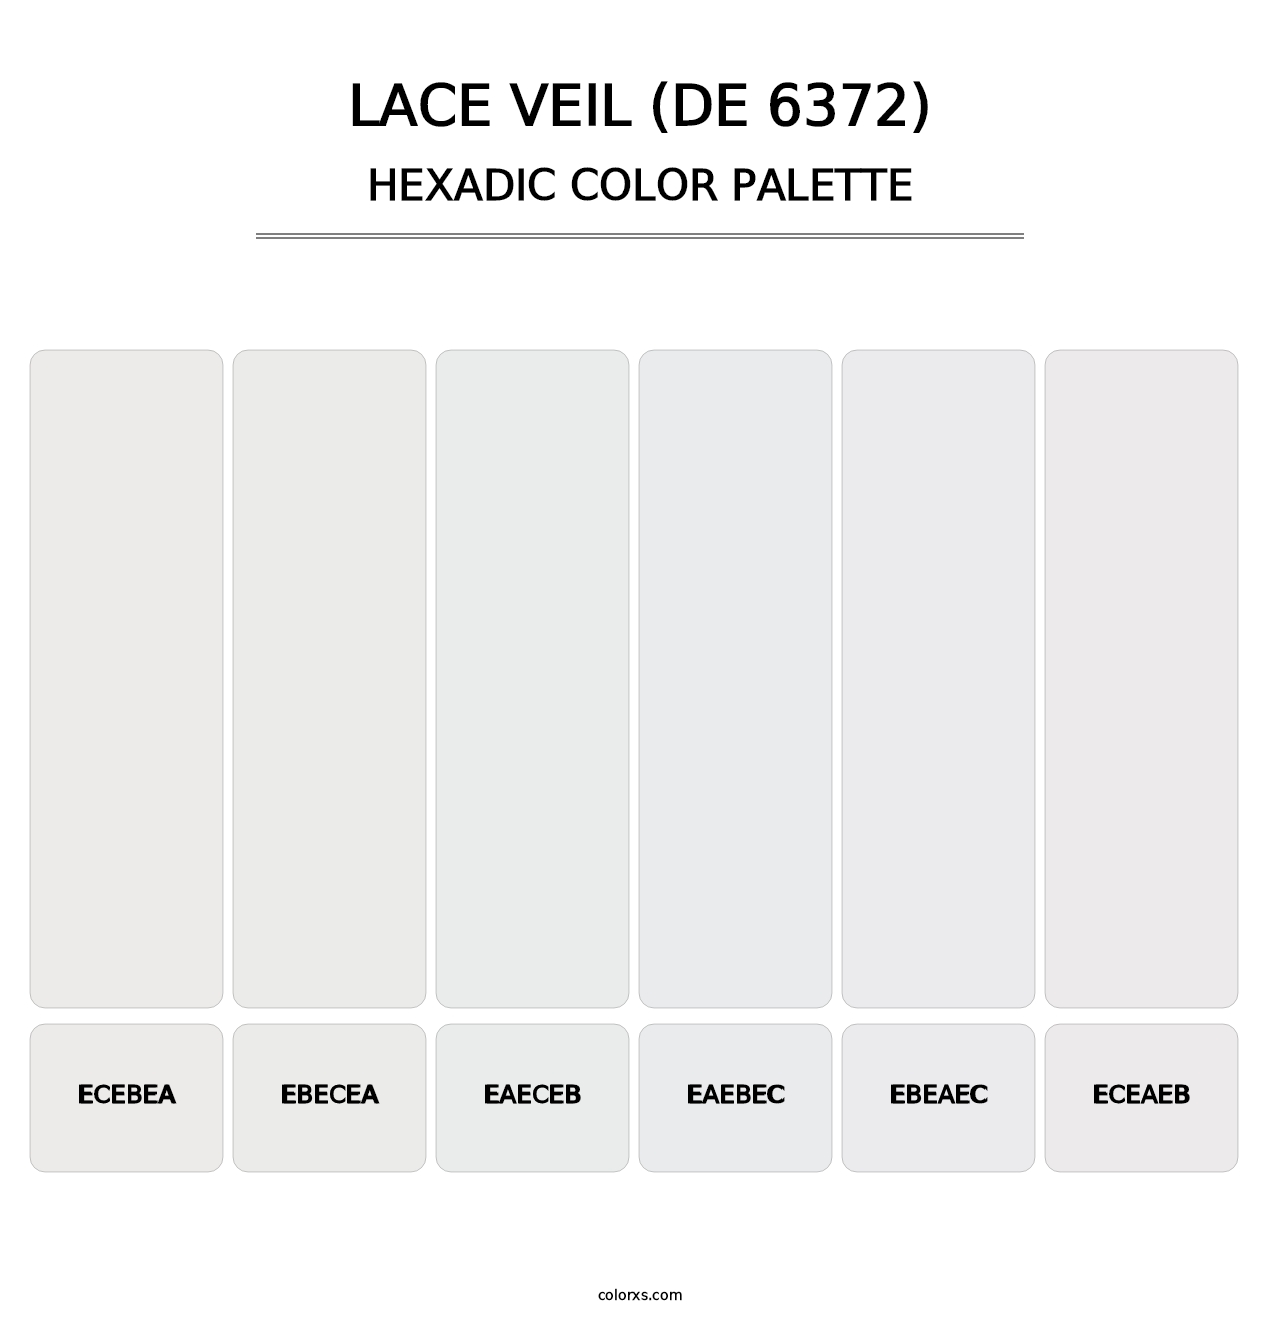 Lace Veil (DE 6372) - Hexadic Color Palette